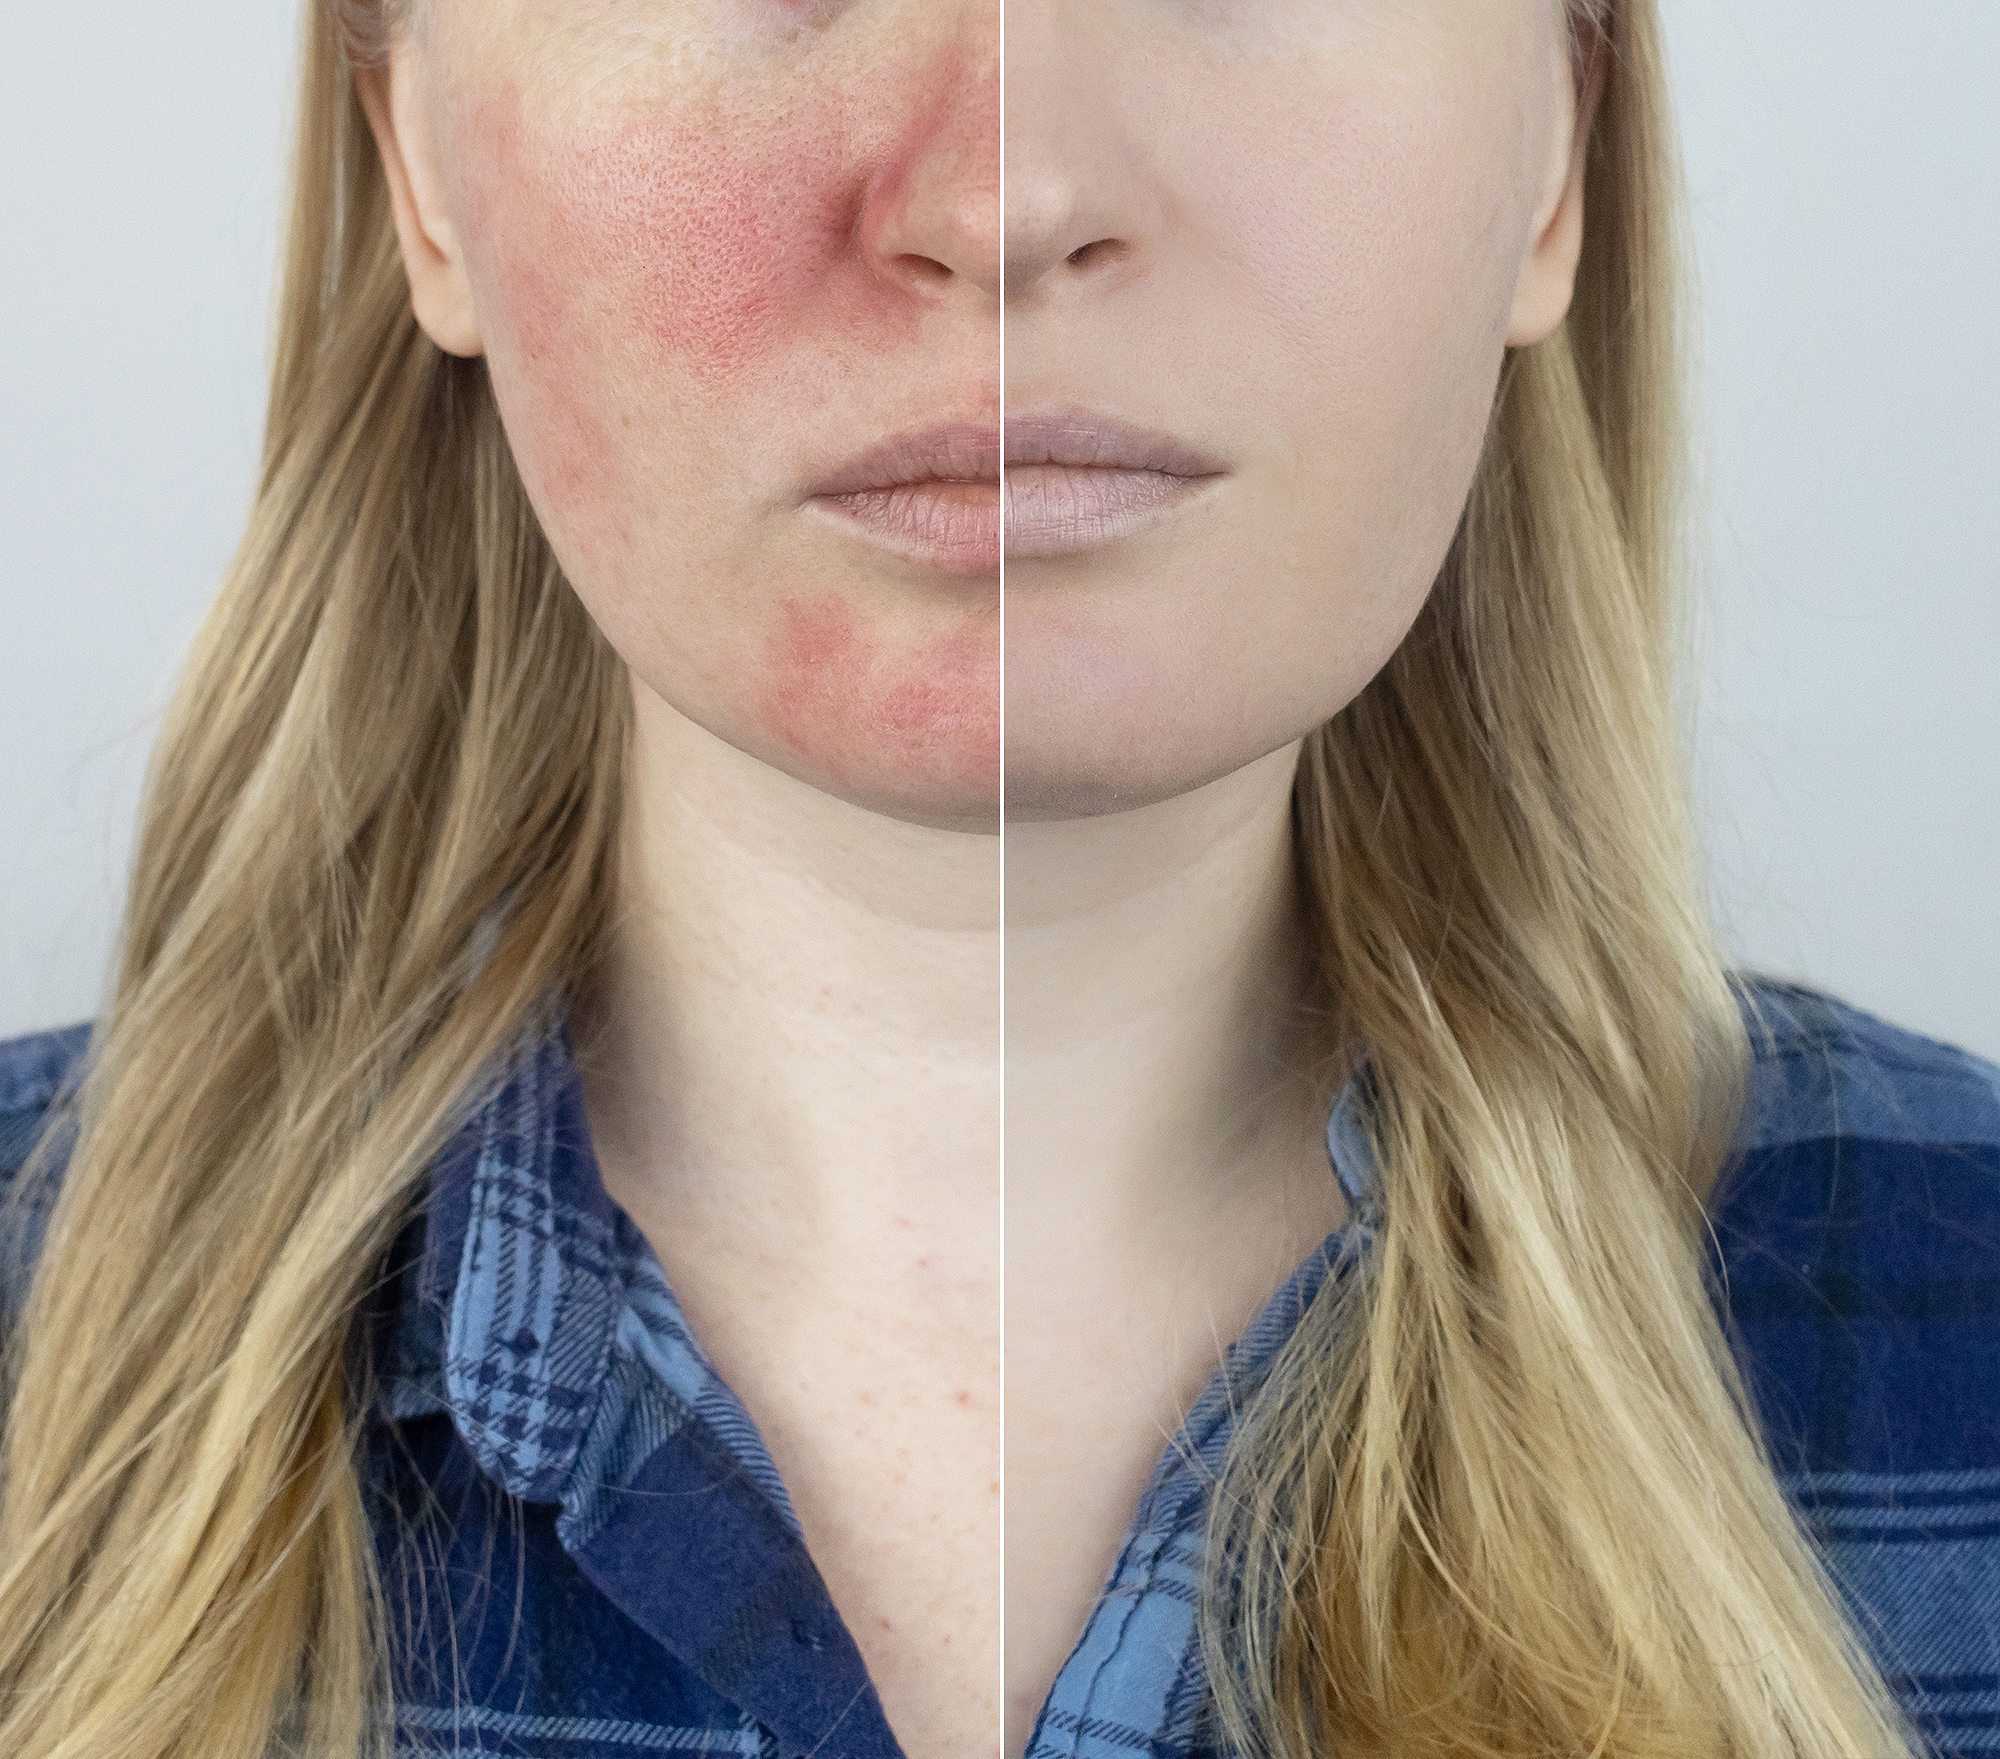 Evian Facial Spray Has 'Endless Benefits' for Skin